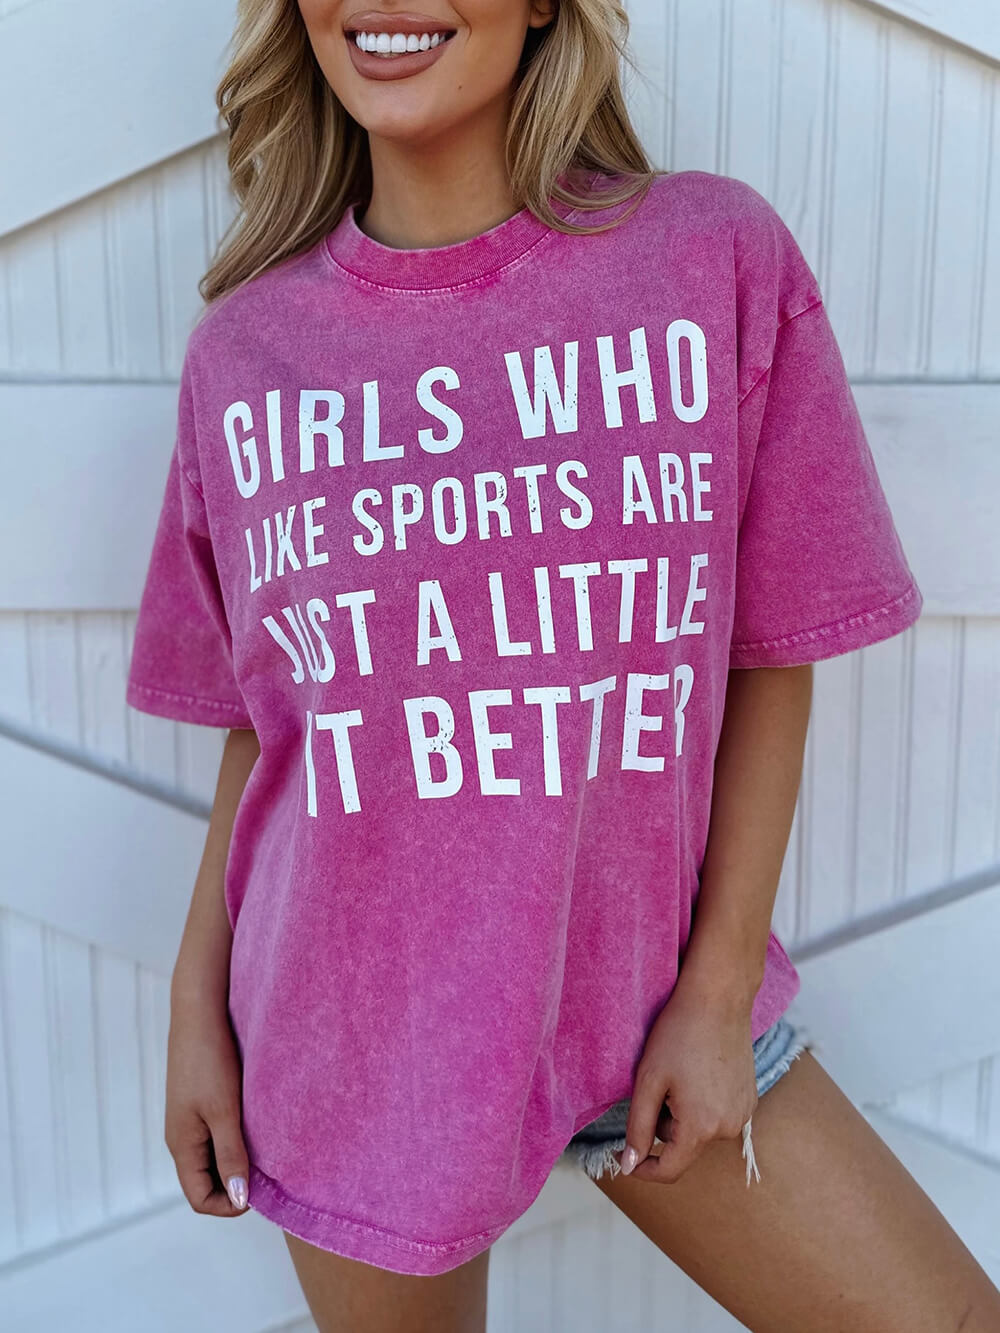 mineralvask ¡° piger, der kan lide sport, er bare en lille smule bedre ¡± pink t-shirt